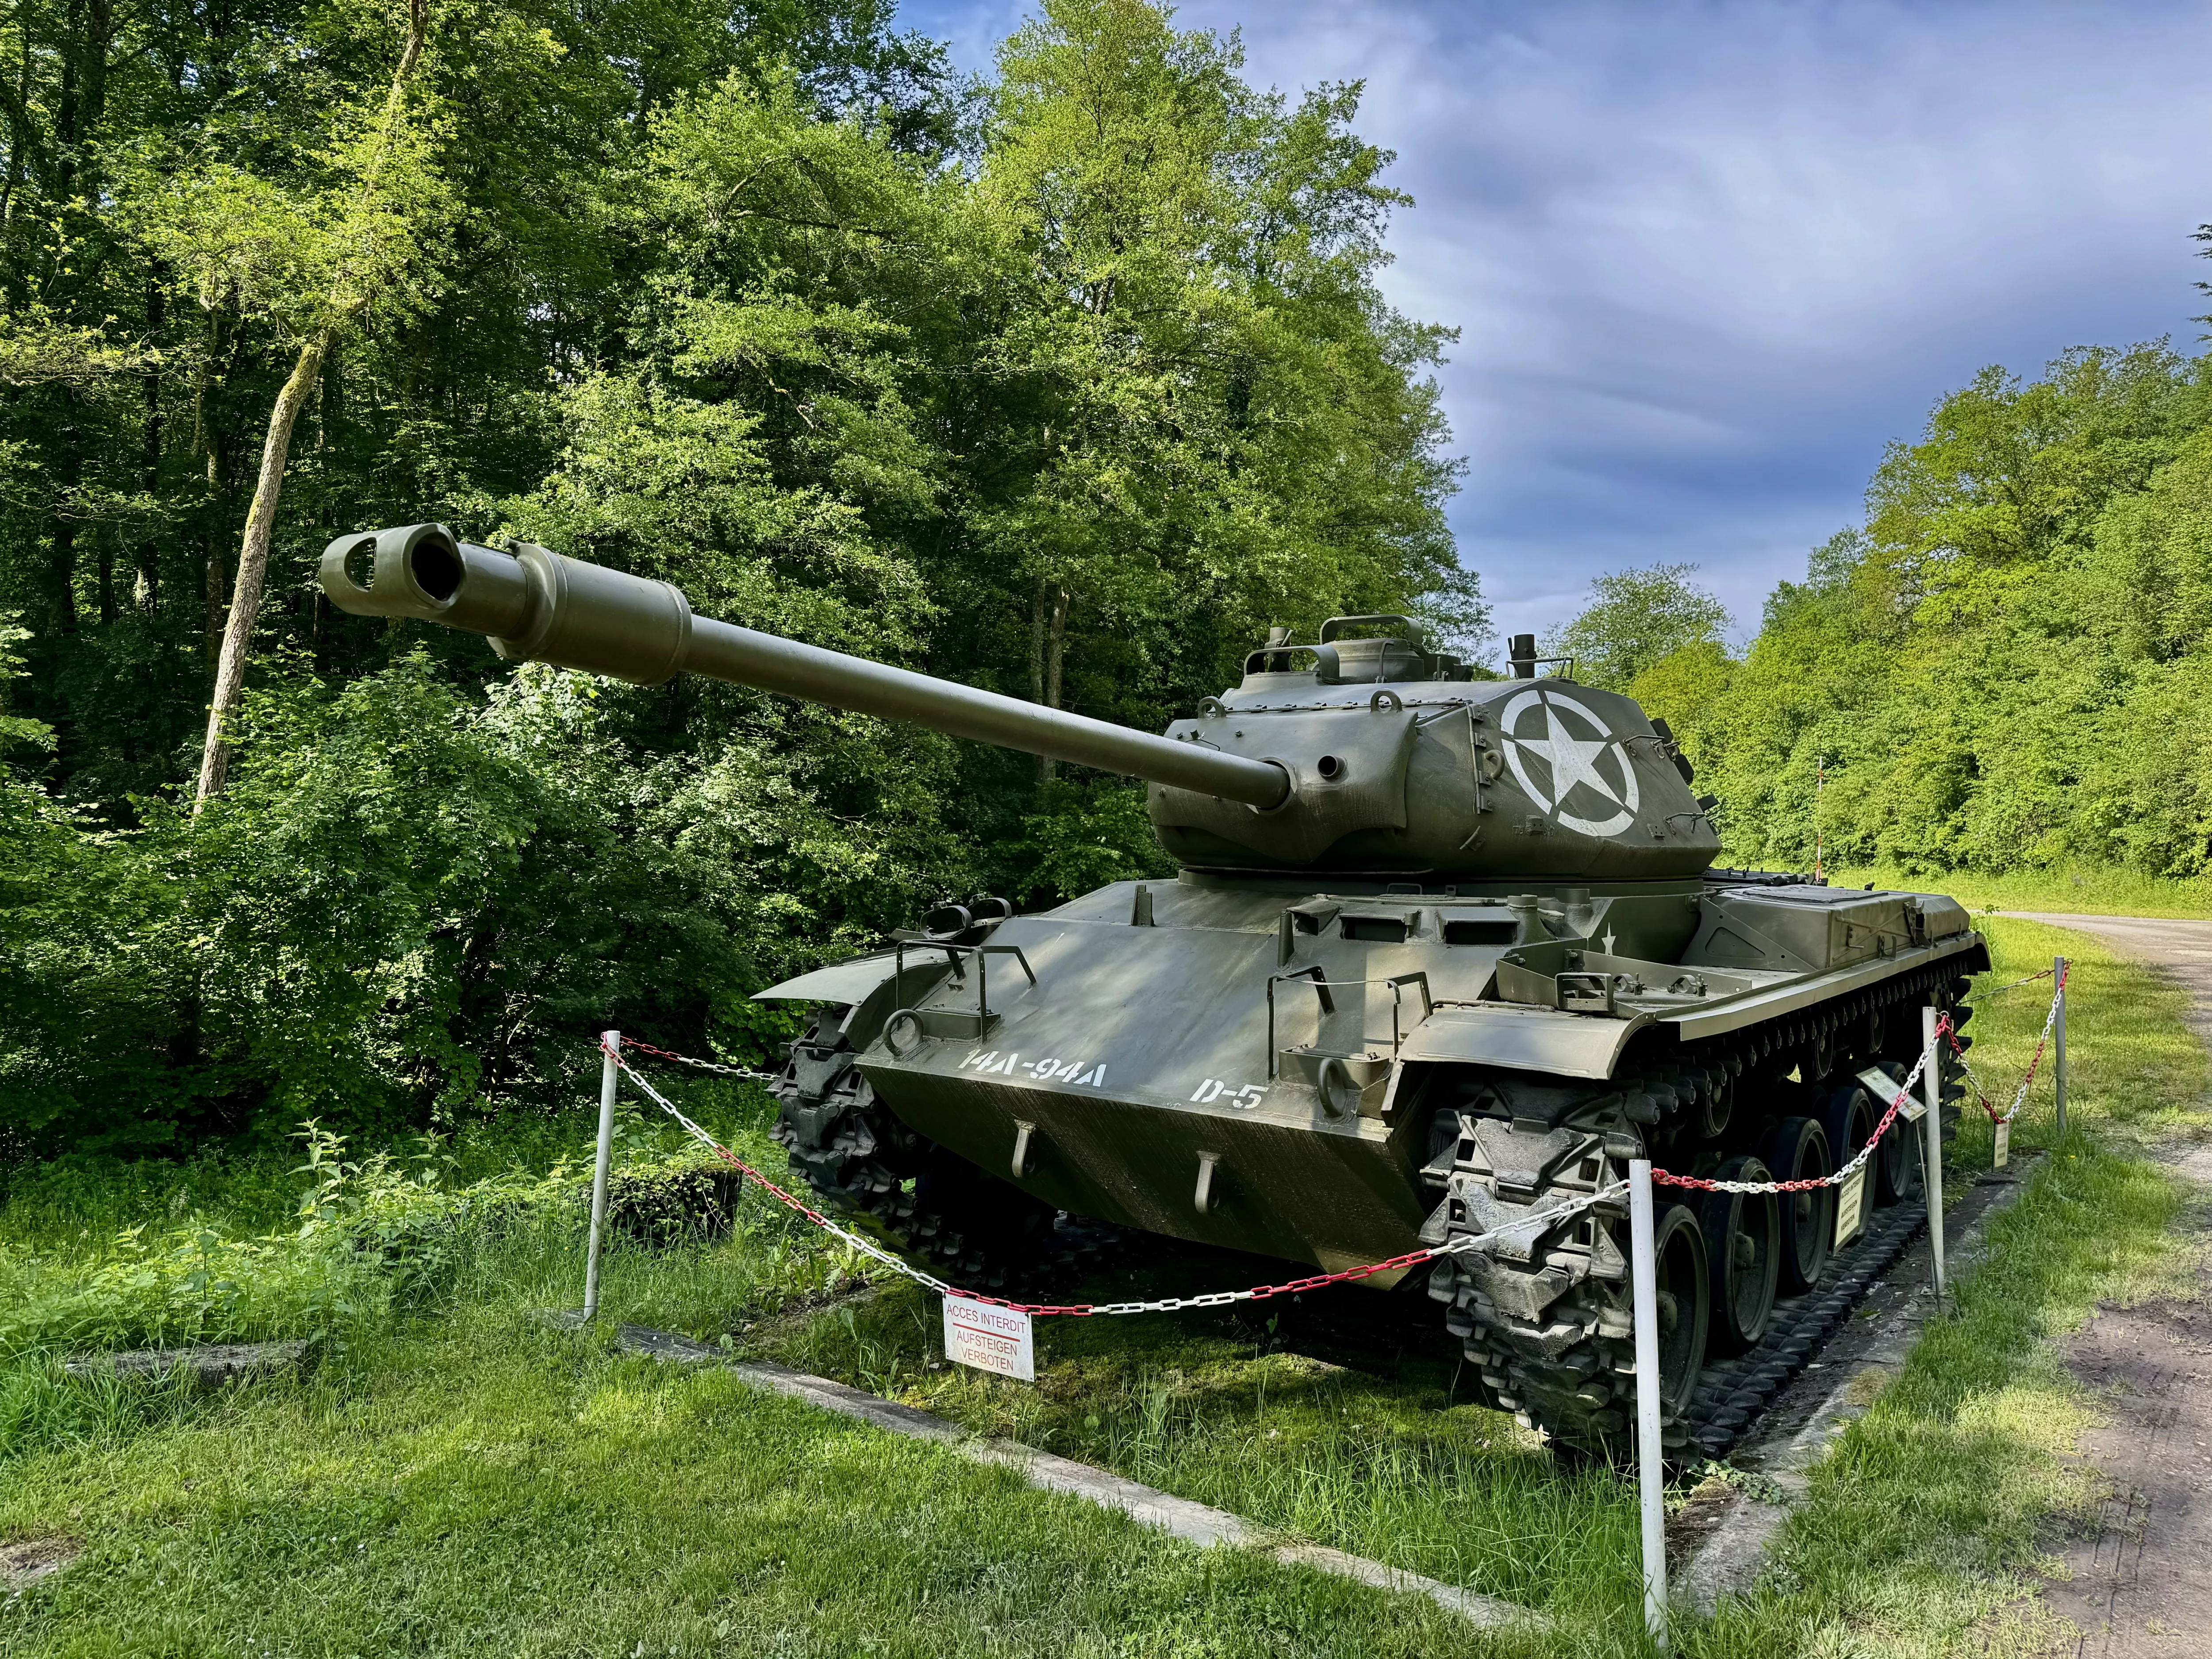 M41 Patton
Maginot Line museum Four a Chaux, Lembach, France